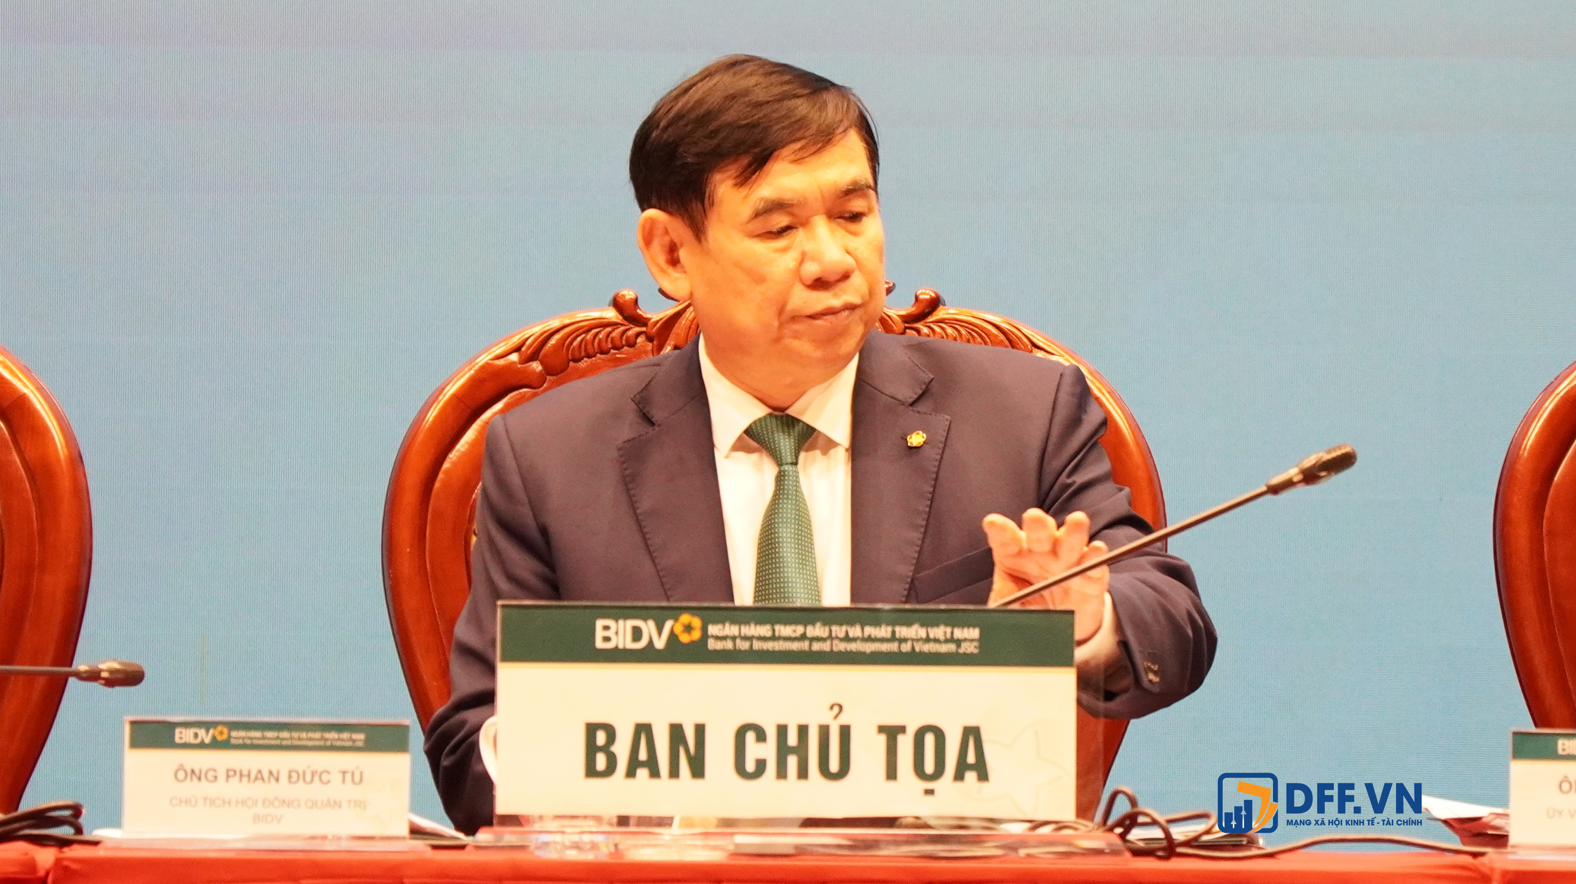 Ông Phan Đức Tú - Chủ tịch HĐQT BIDV